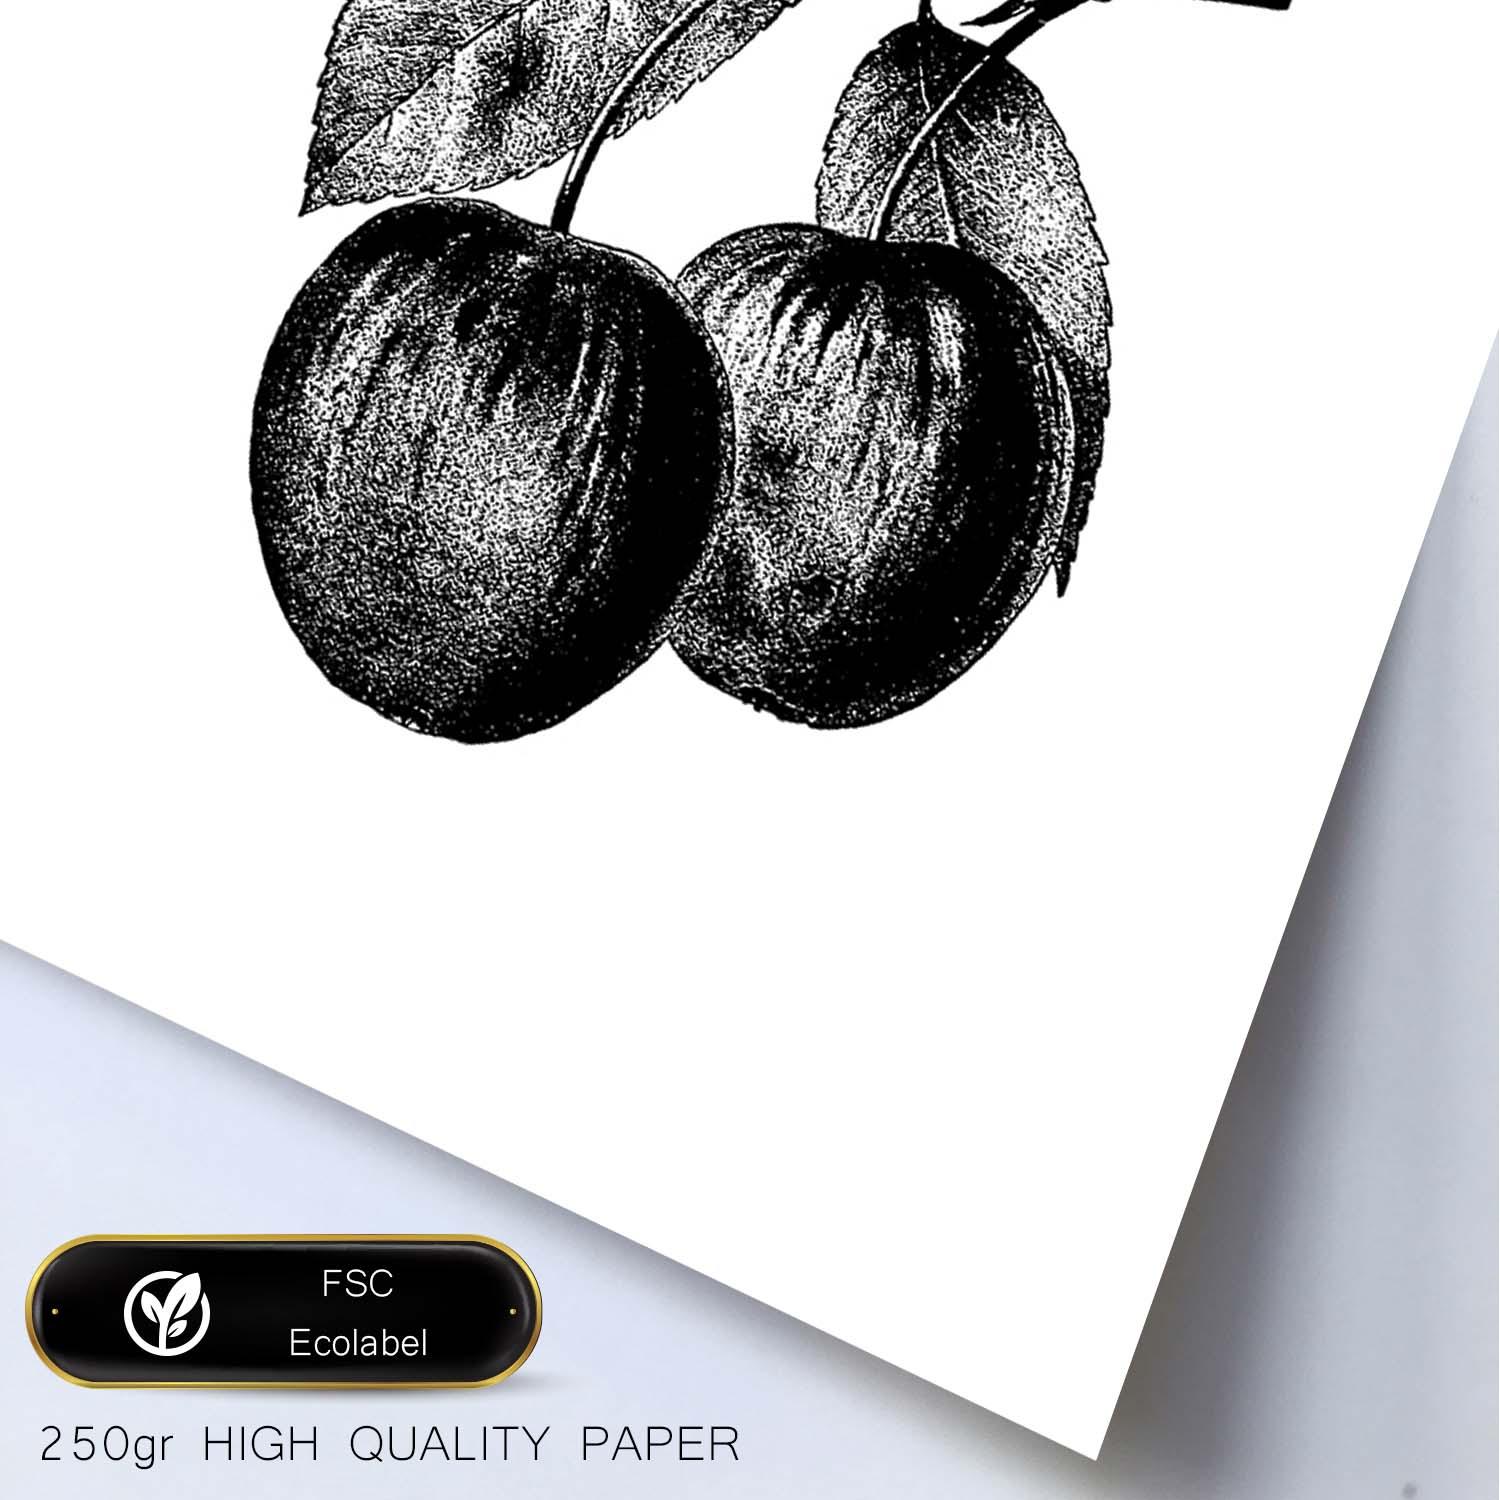 Poster de Ciruela. Láminas de frutas y verduras.-Artwork-Nacnic-Nacnic Estudio SL